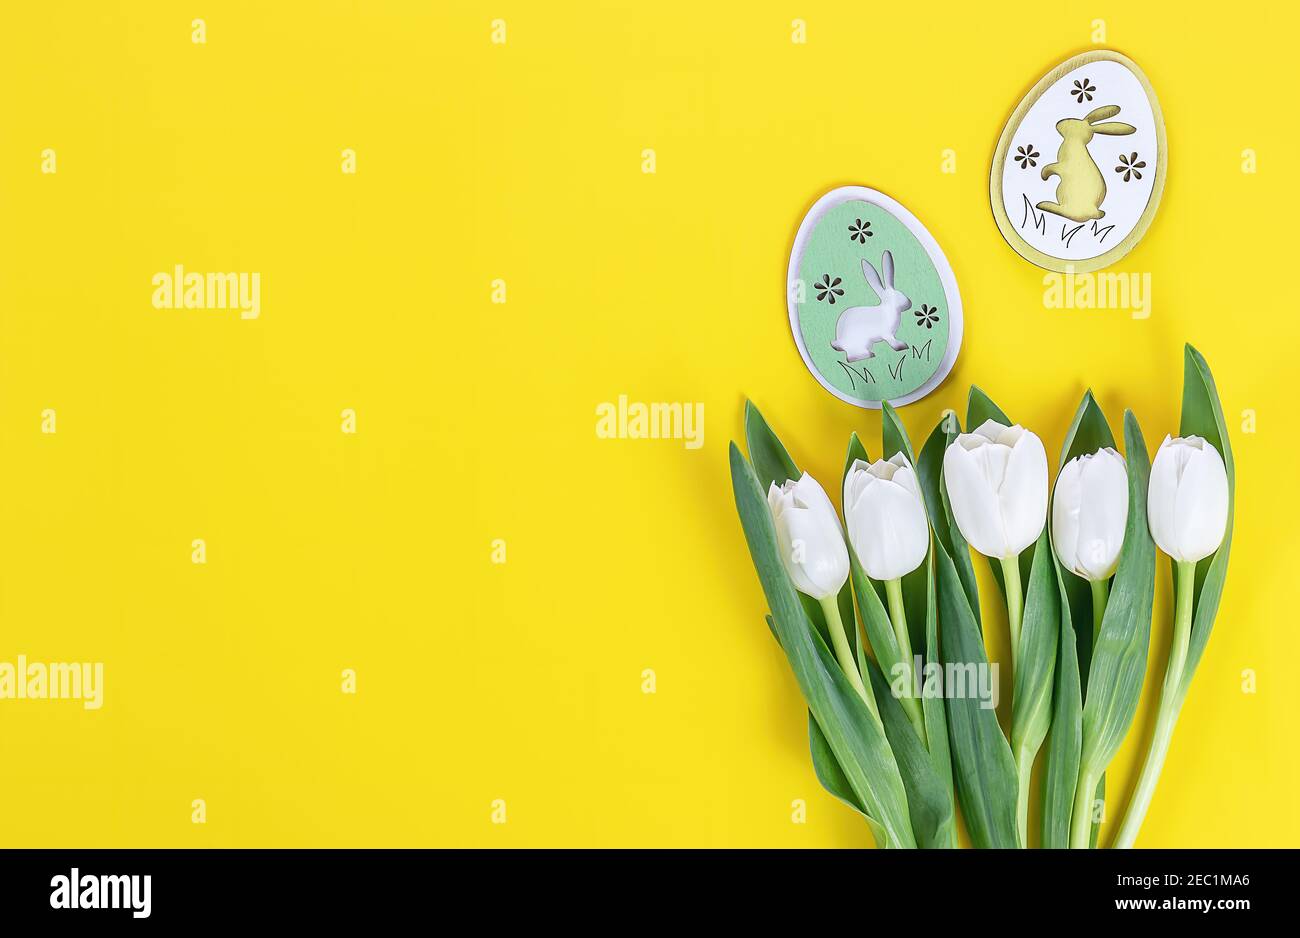 Postal de caballete. Tulipanes blancos y huevos de conejito de madera sobre fondo amarillo Foto de stock